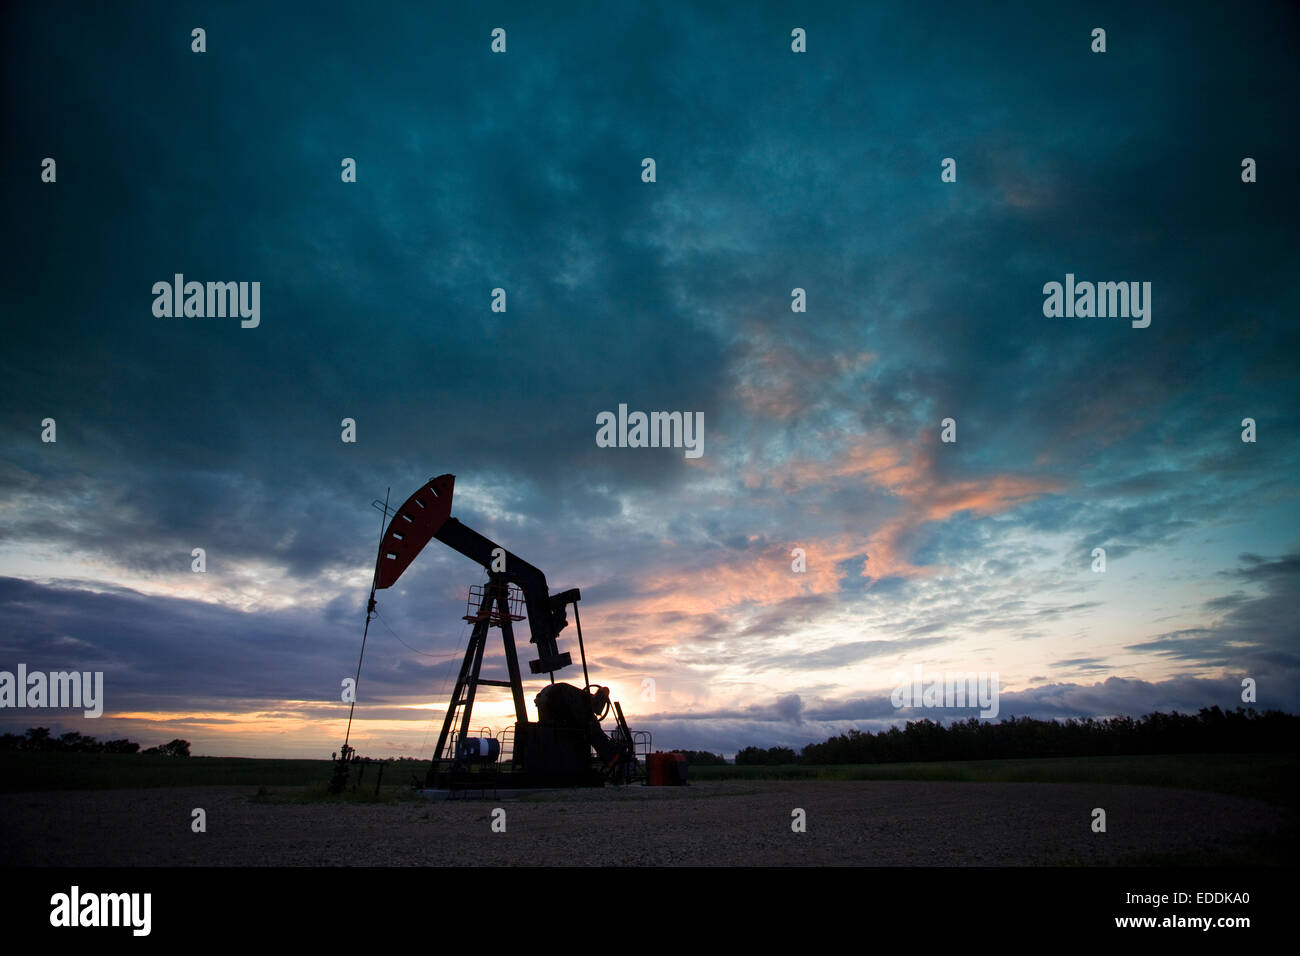 Ein Öl-Derrick, ein gut Kopf Pumpe Arm mit Rahmen, Silhouette gegen den Abendhimmel. Öl-Geschäft. Stockfoto